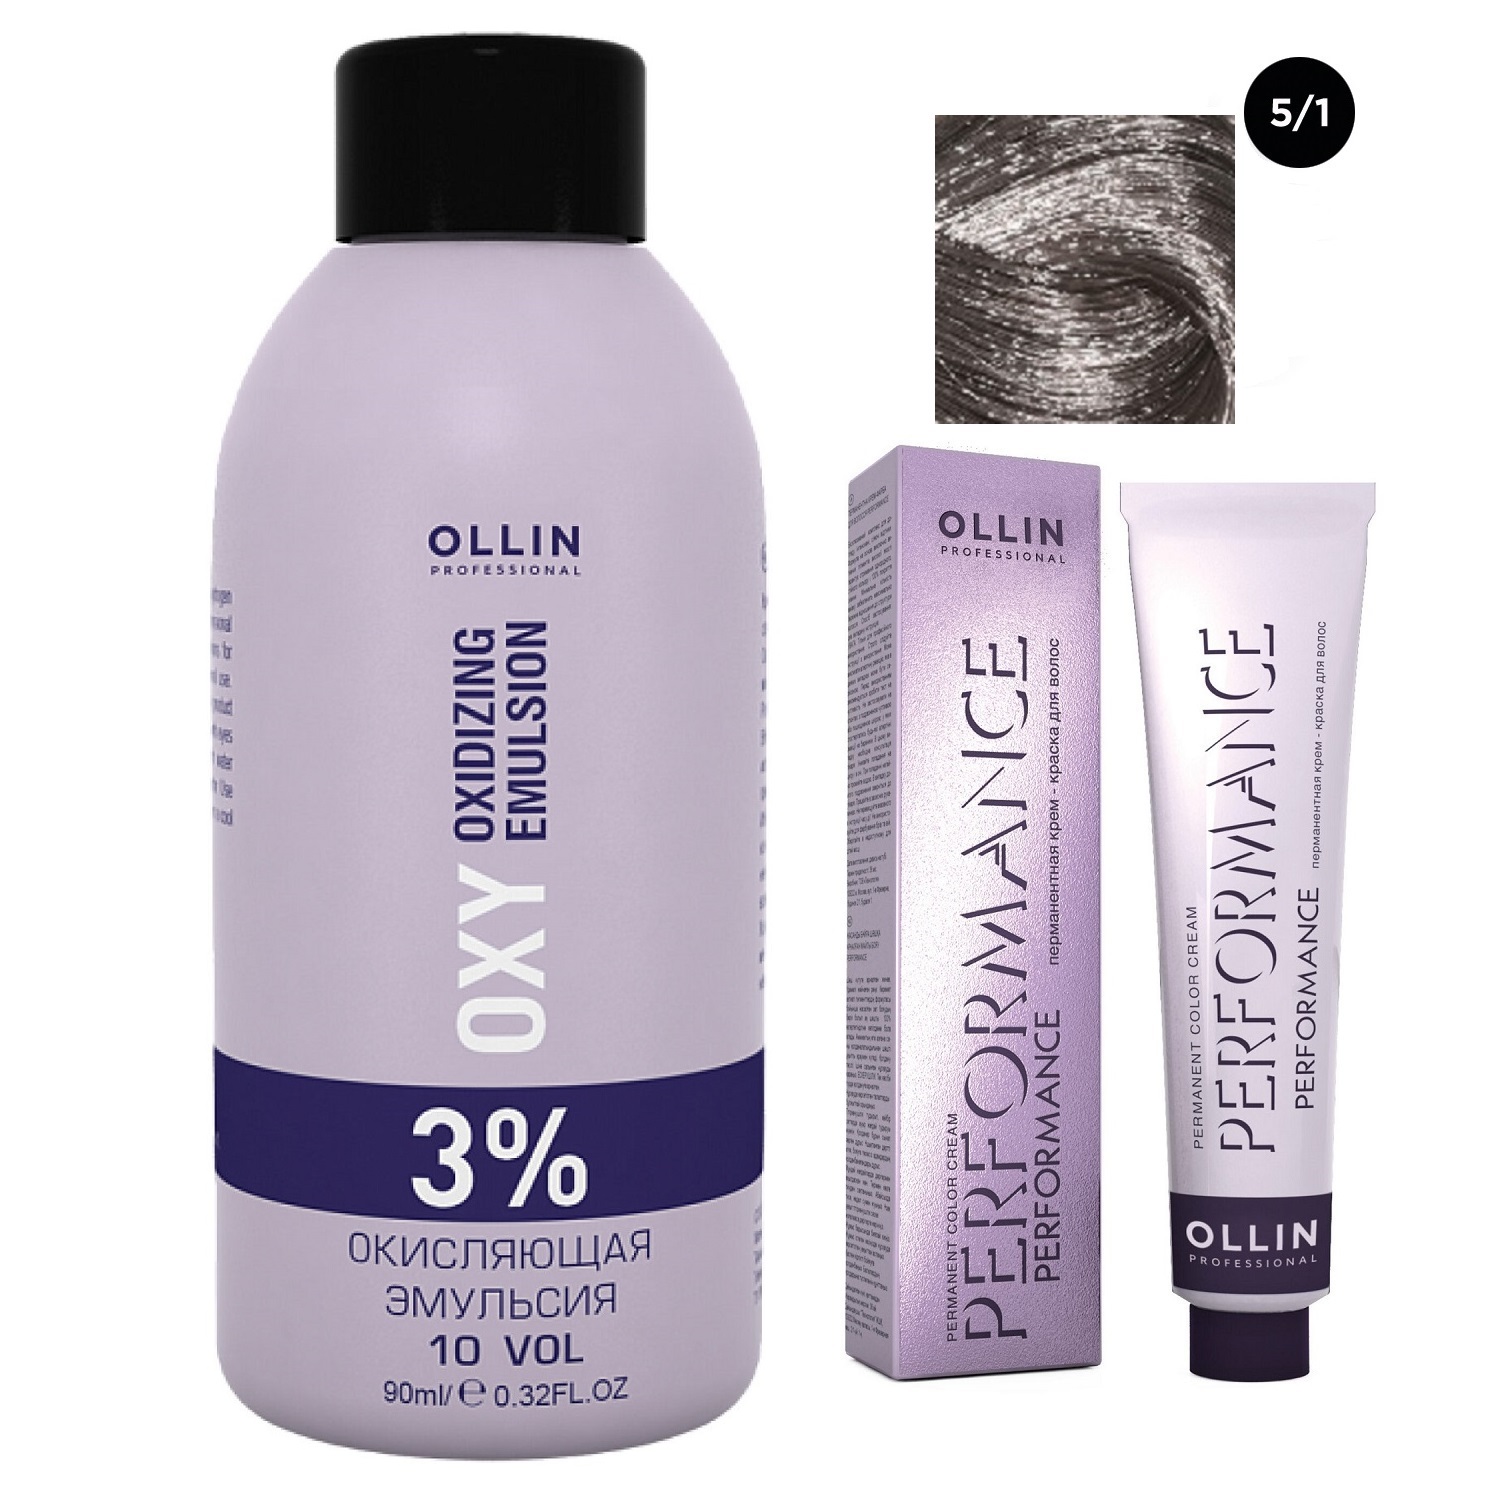 Ollin Professional Набор Перманентная крем-краска для волос Ollin Performance оттенок 5/1 светлый шатен пепельный 60 мл + Окисляющая эмульсия Oxy 3% 90 мл (Ollin Professional, Performance) окисляющая эмульсия 1 5% ollin professional performance oxy 90 мл